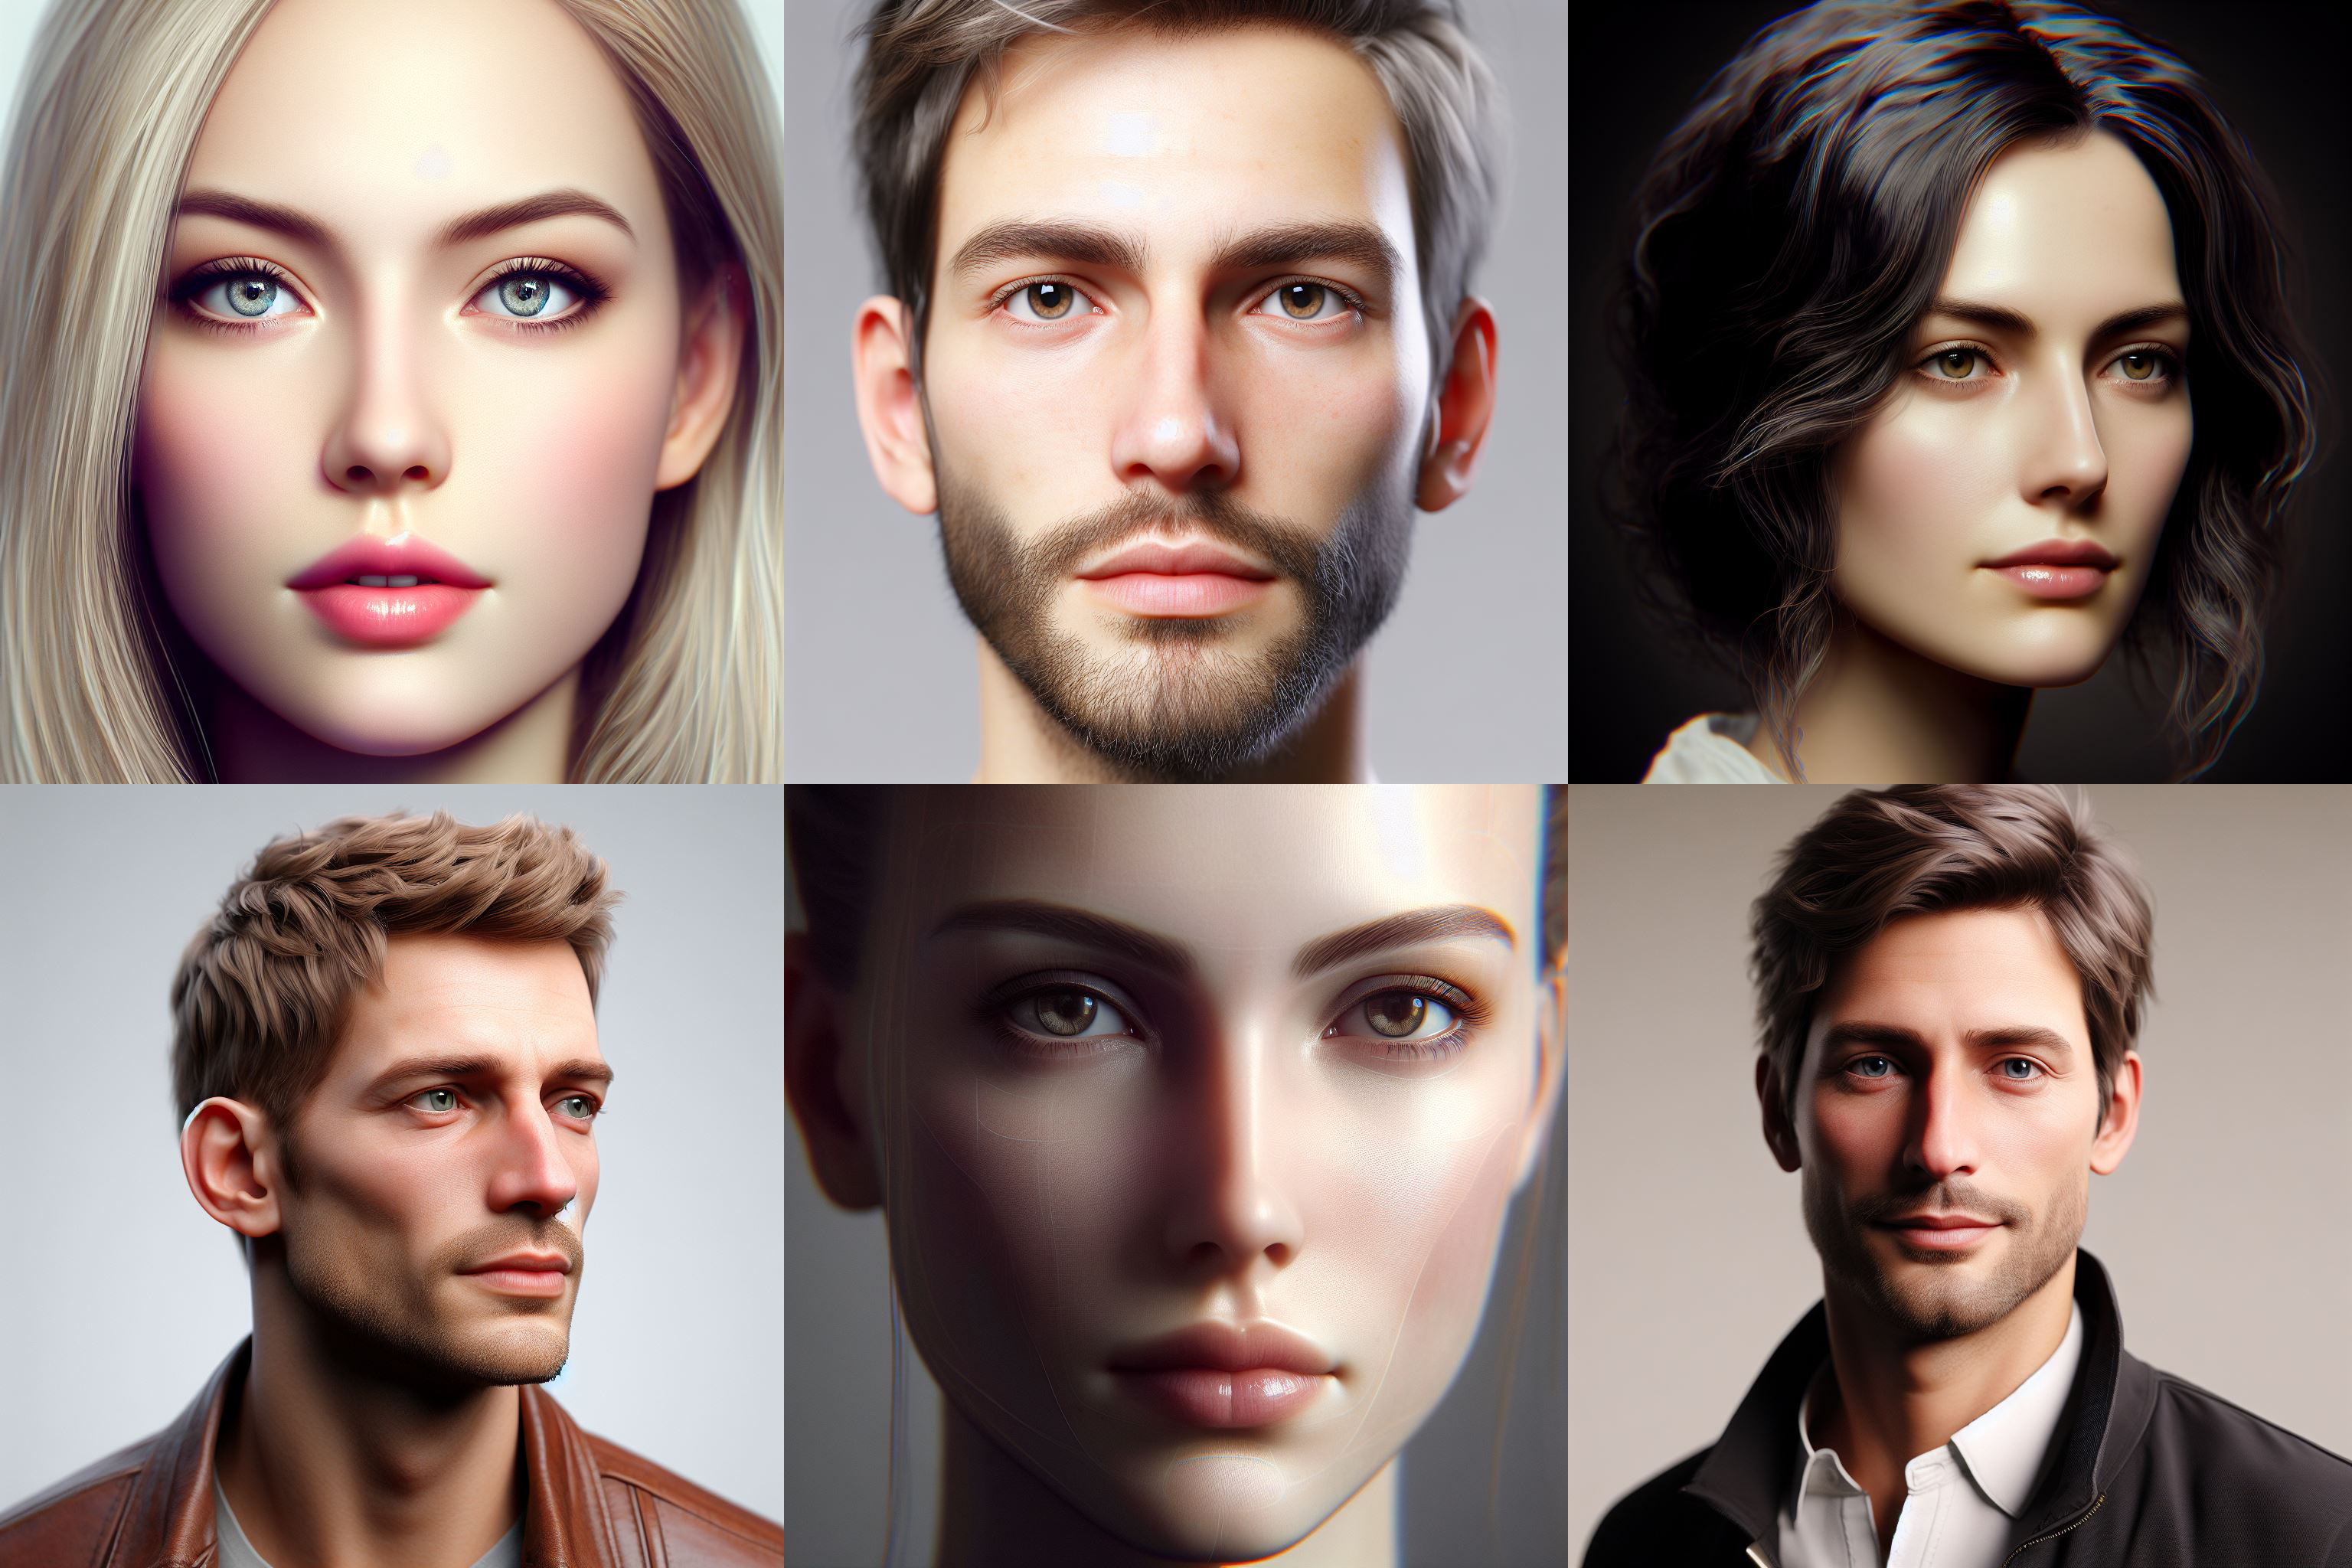 La gente confía más en las caras blancas de las fotos generadas que en las reales: estudio